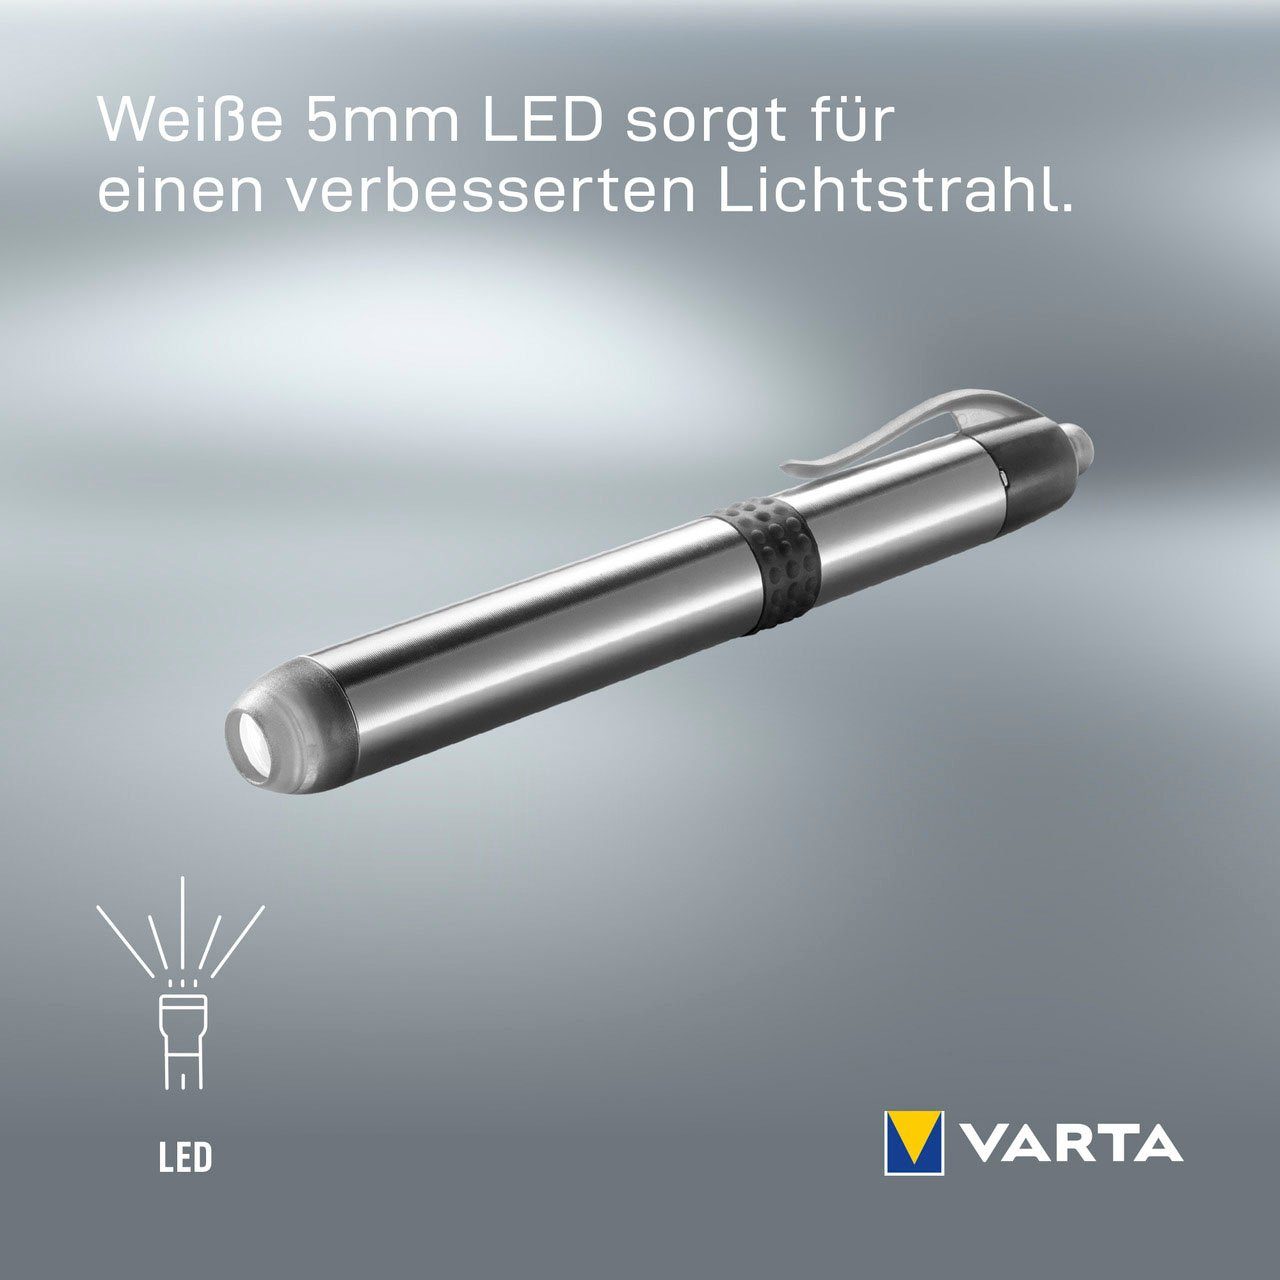 VARTA Taschenlampe Pen Light 1AAA with Batt